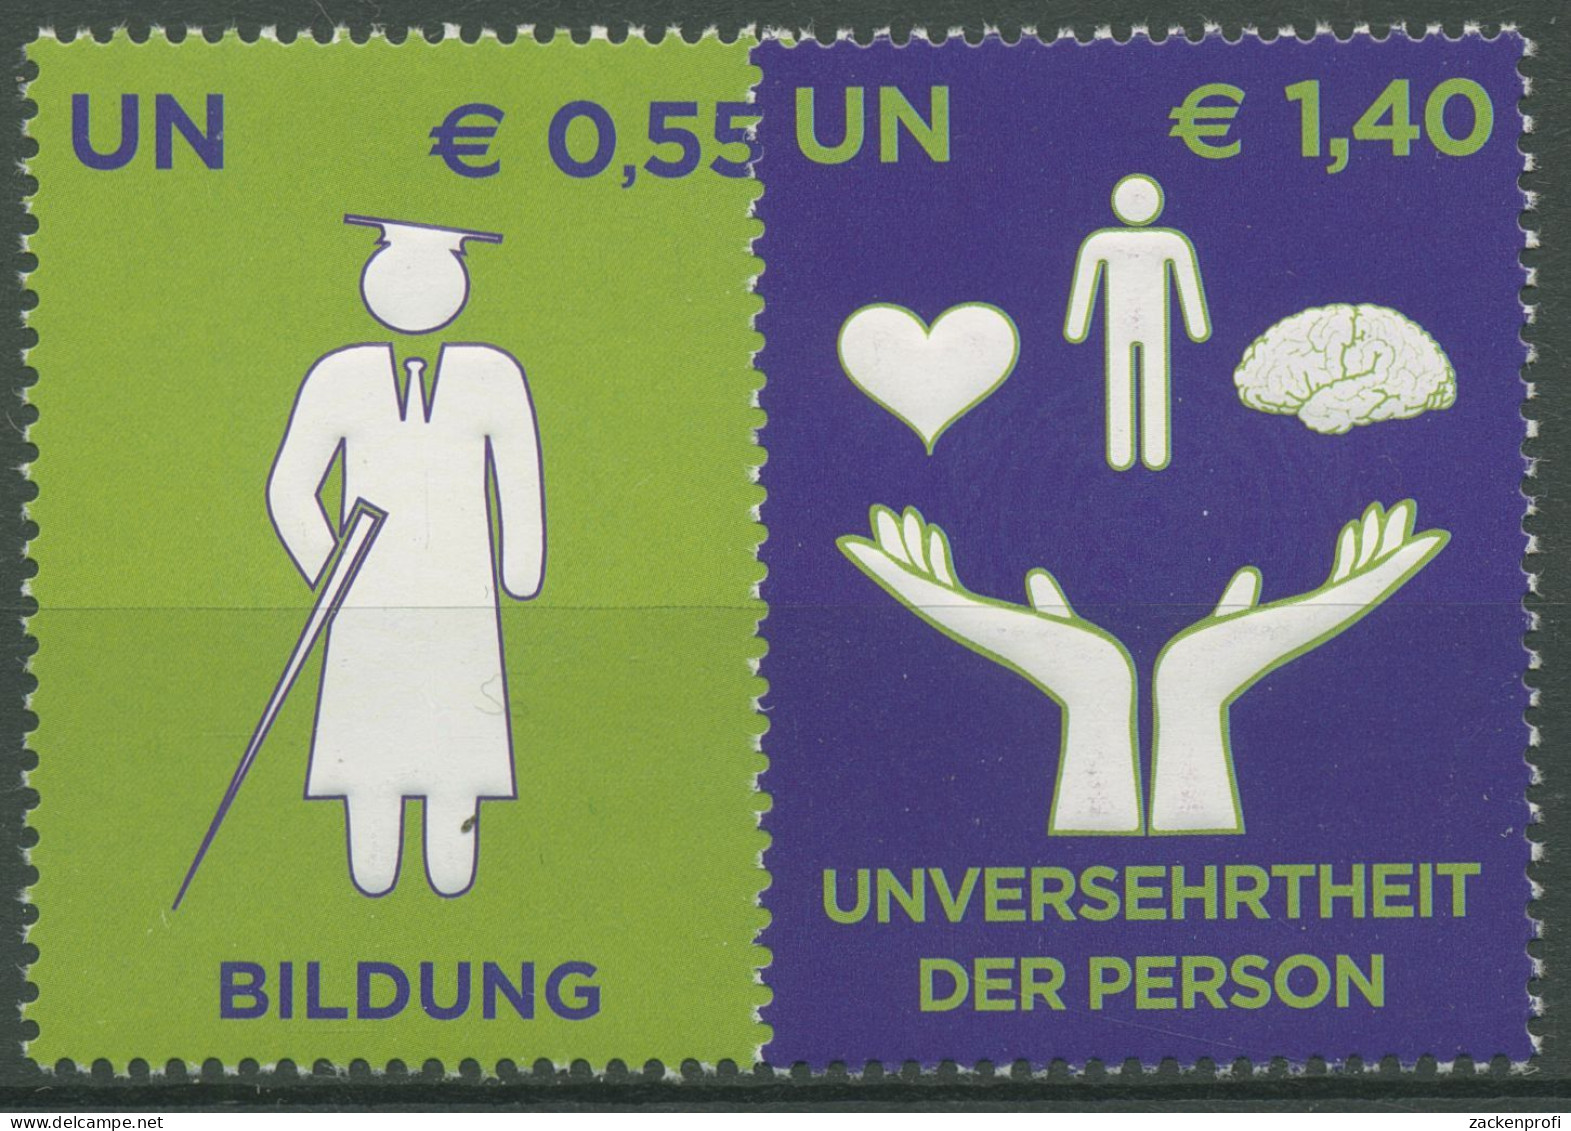 UNO Wien 2008 Menschen Mit Behinderung 543/44 Postfrisch - Unused Stamps